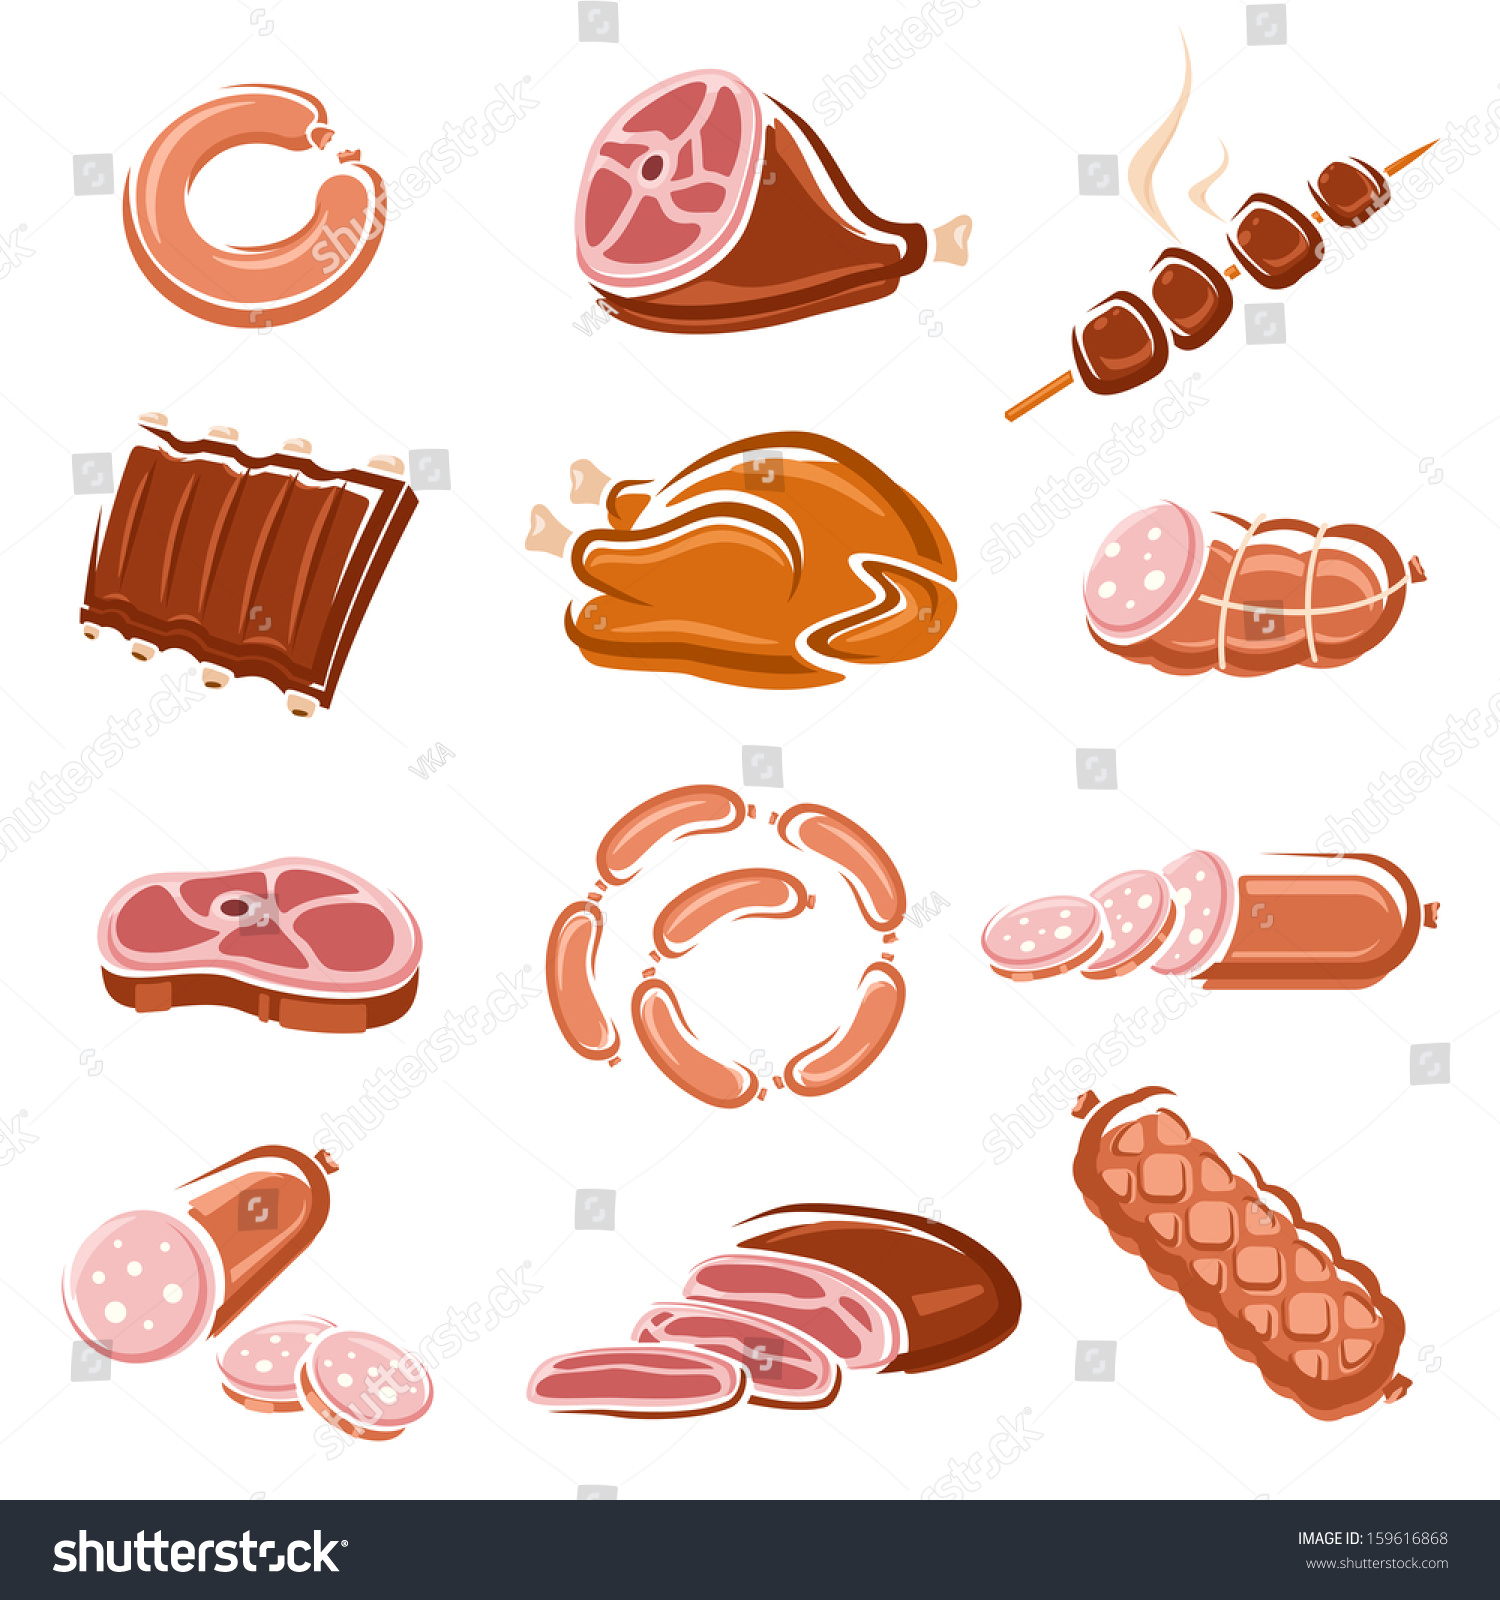 Meat Food Set Vector Stock Vector 159616868 - Shutterstock